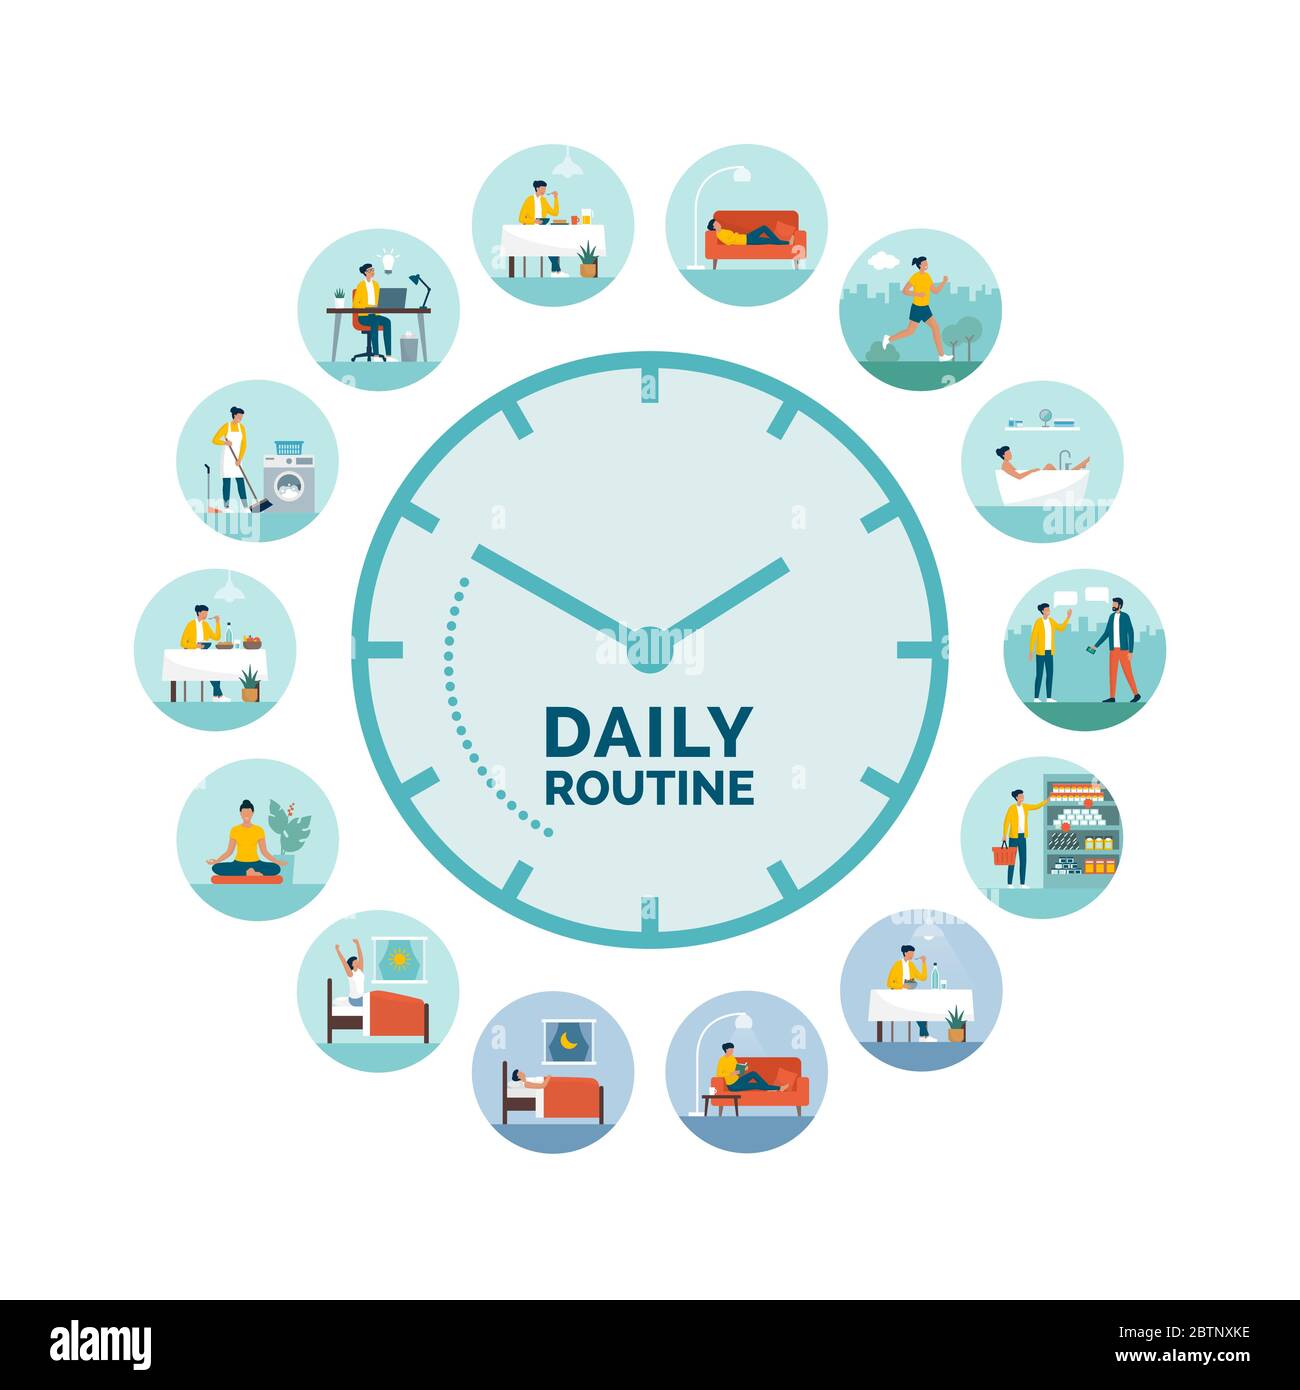 Uhr mit täglichen Aktivitäten Routine: Frau verschiedene Aufgaben während Tag und Nacht, gesunde Lebensweise und biologische Rhythmen Konzept Stock Vektor